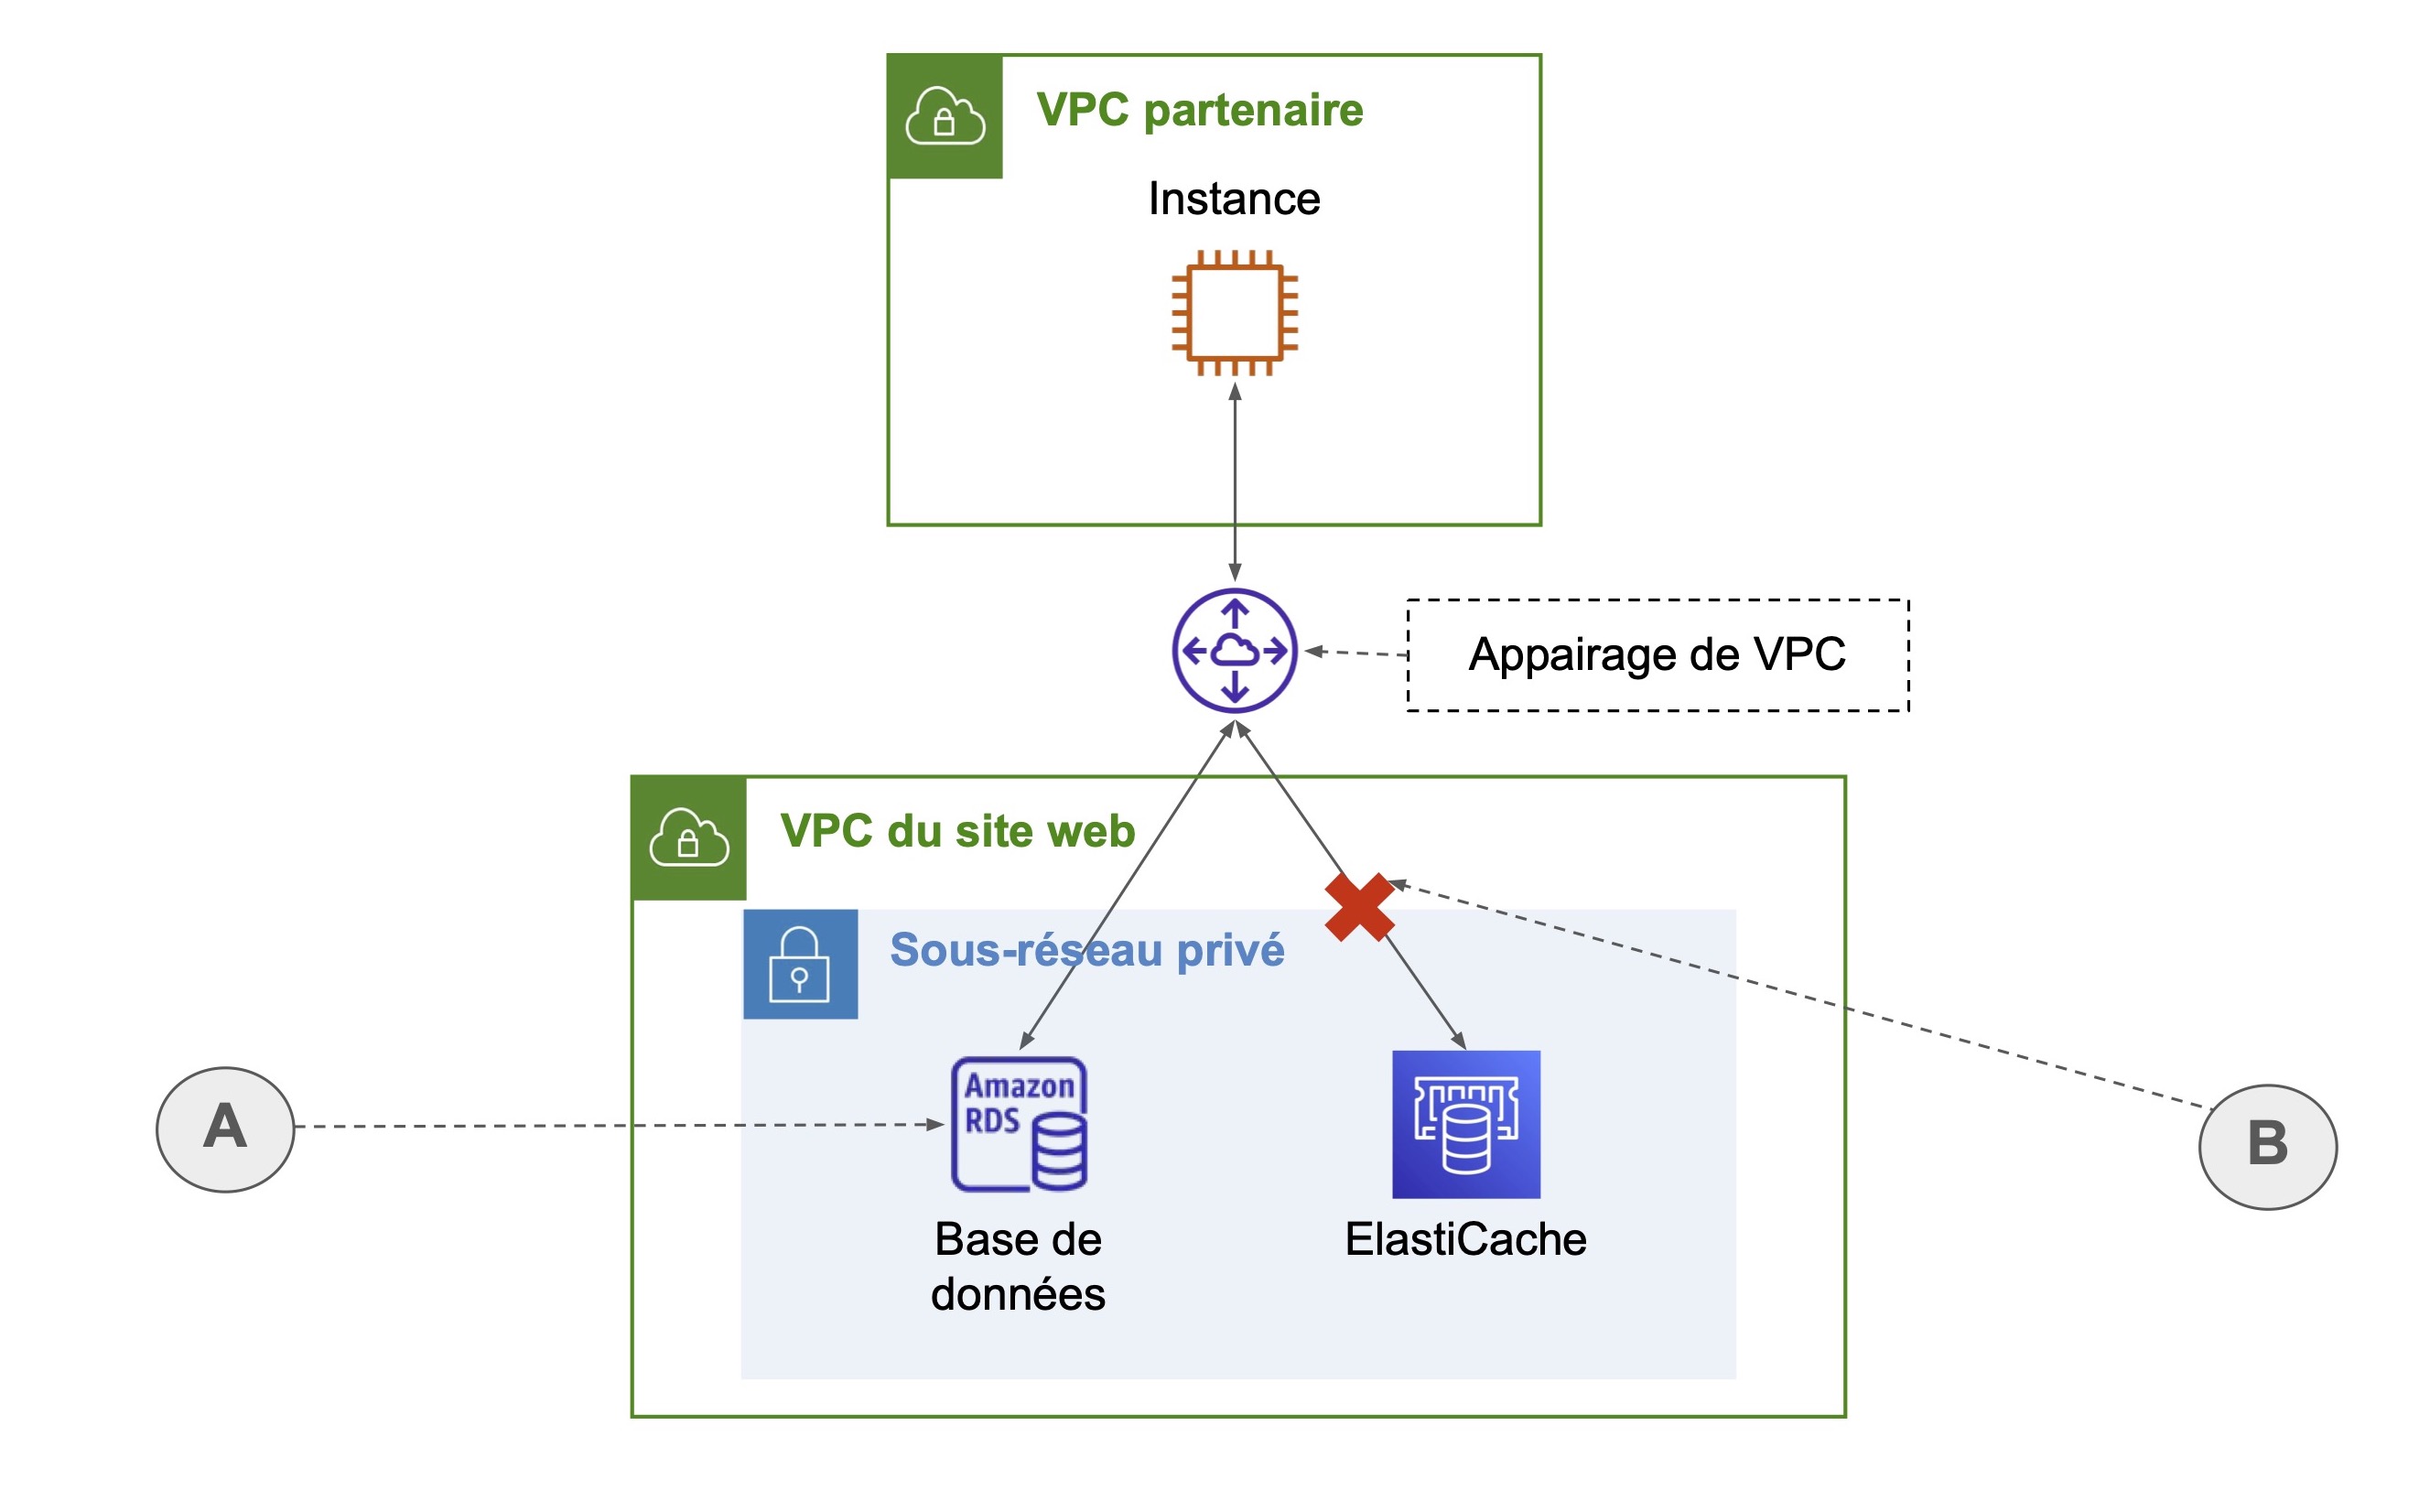 Une flèche à double sens mène de l'instance dans un VPC partenaire vers l'appairage de VPC. Ce-dernier est également connecté à la base de données (A) et ElastiCache (chemin barrée, B), se trouvant dans le sous-réseau privé du VPC du site web